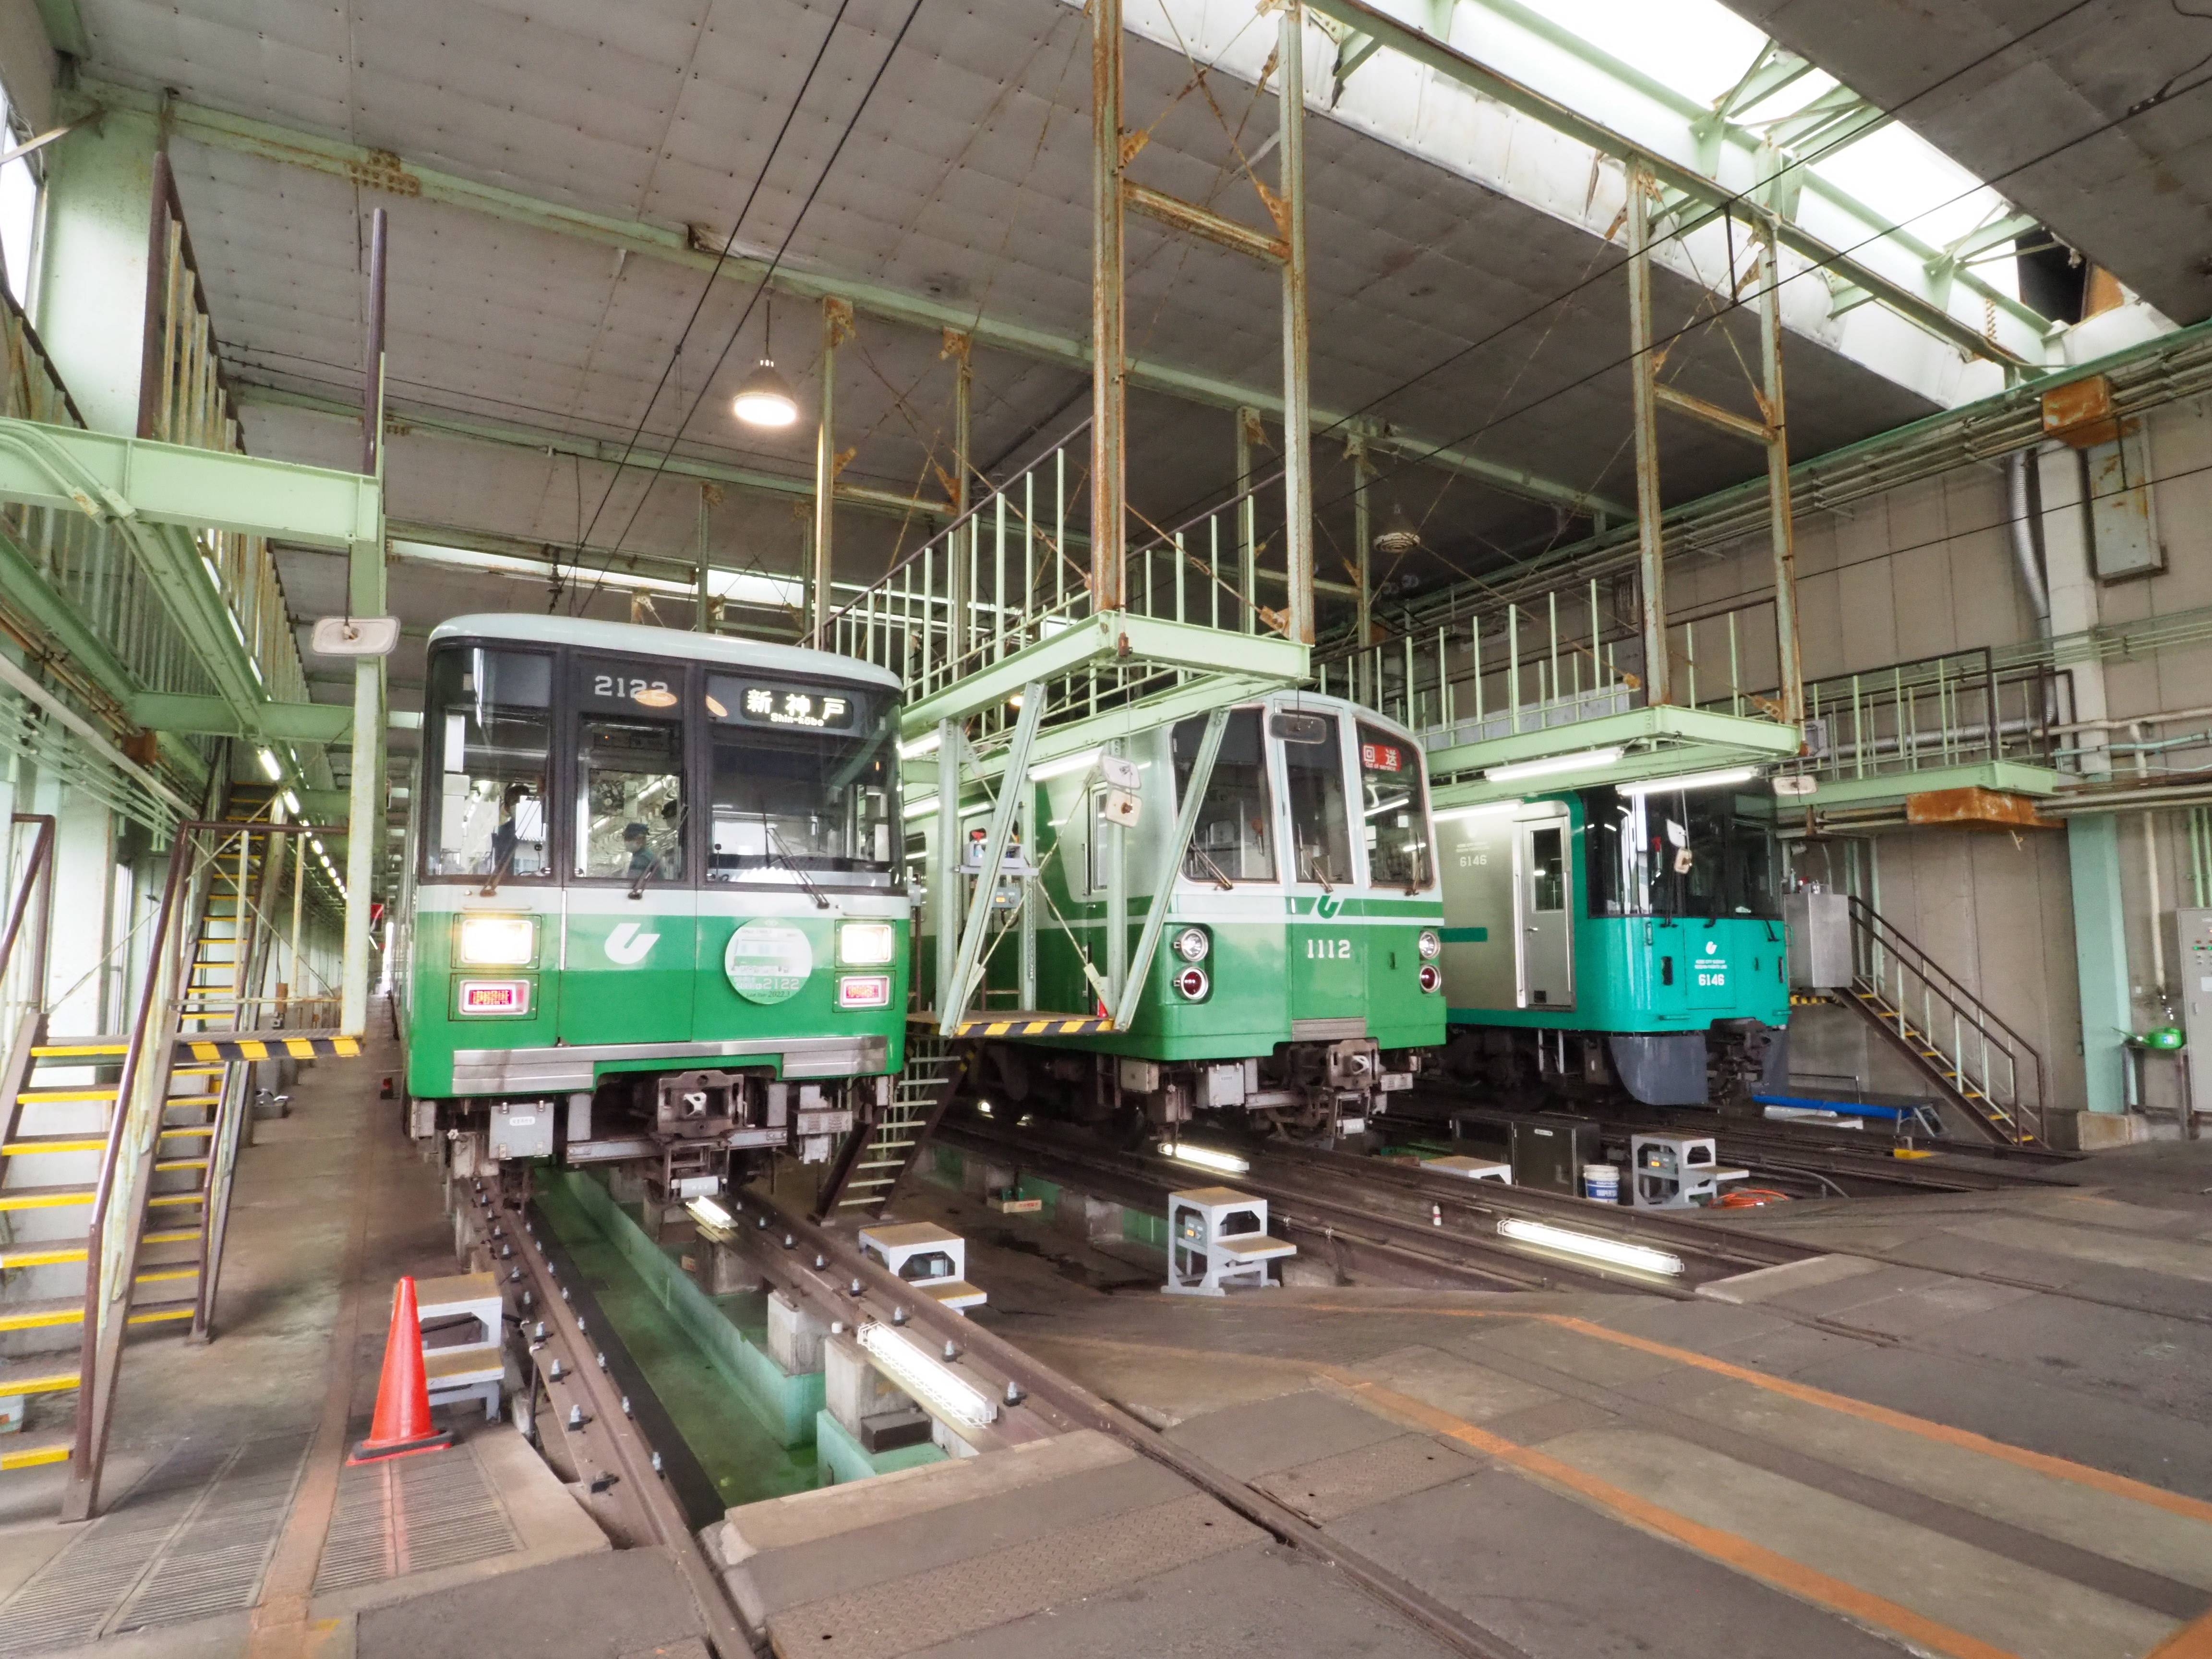 神戸市交通局共催のもと、神戸市営地下鉄2000形の車両引退ツアーを開催しました